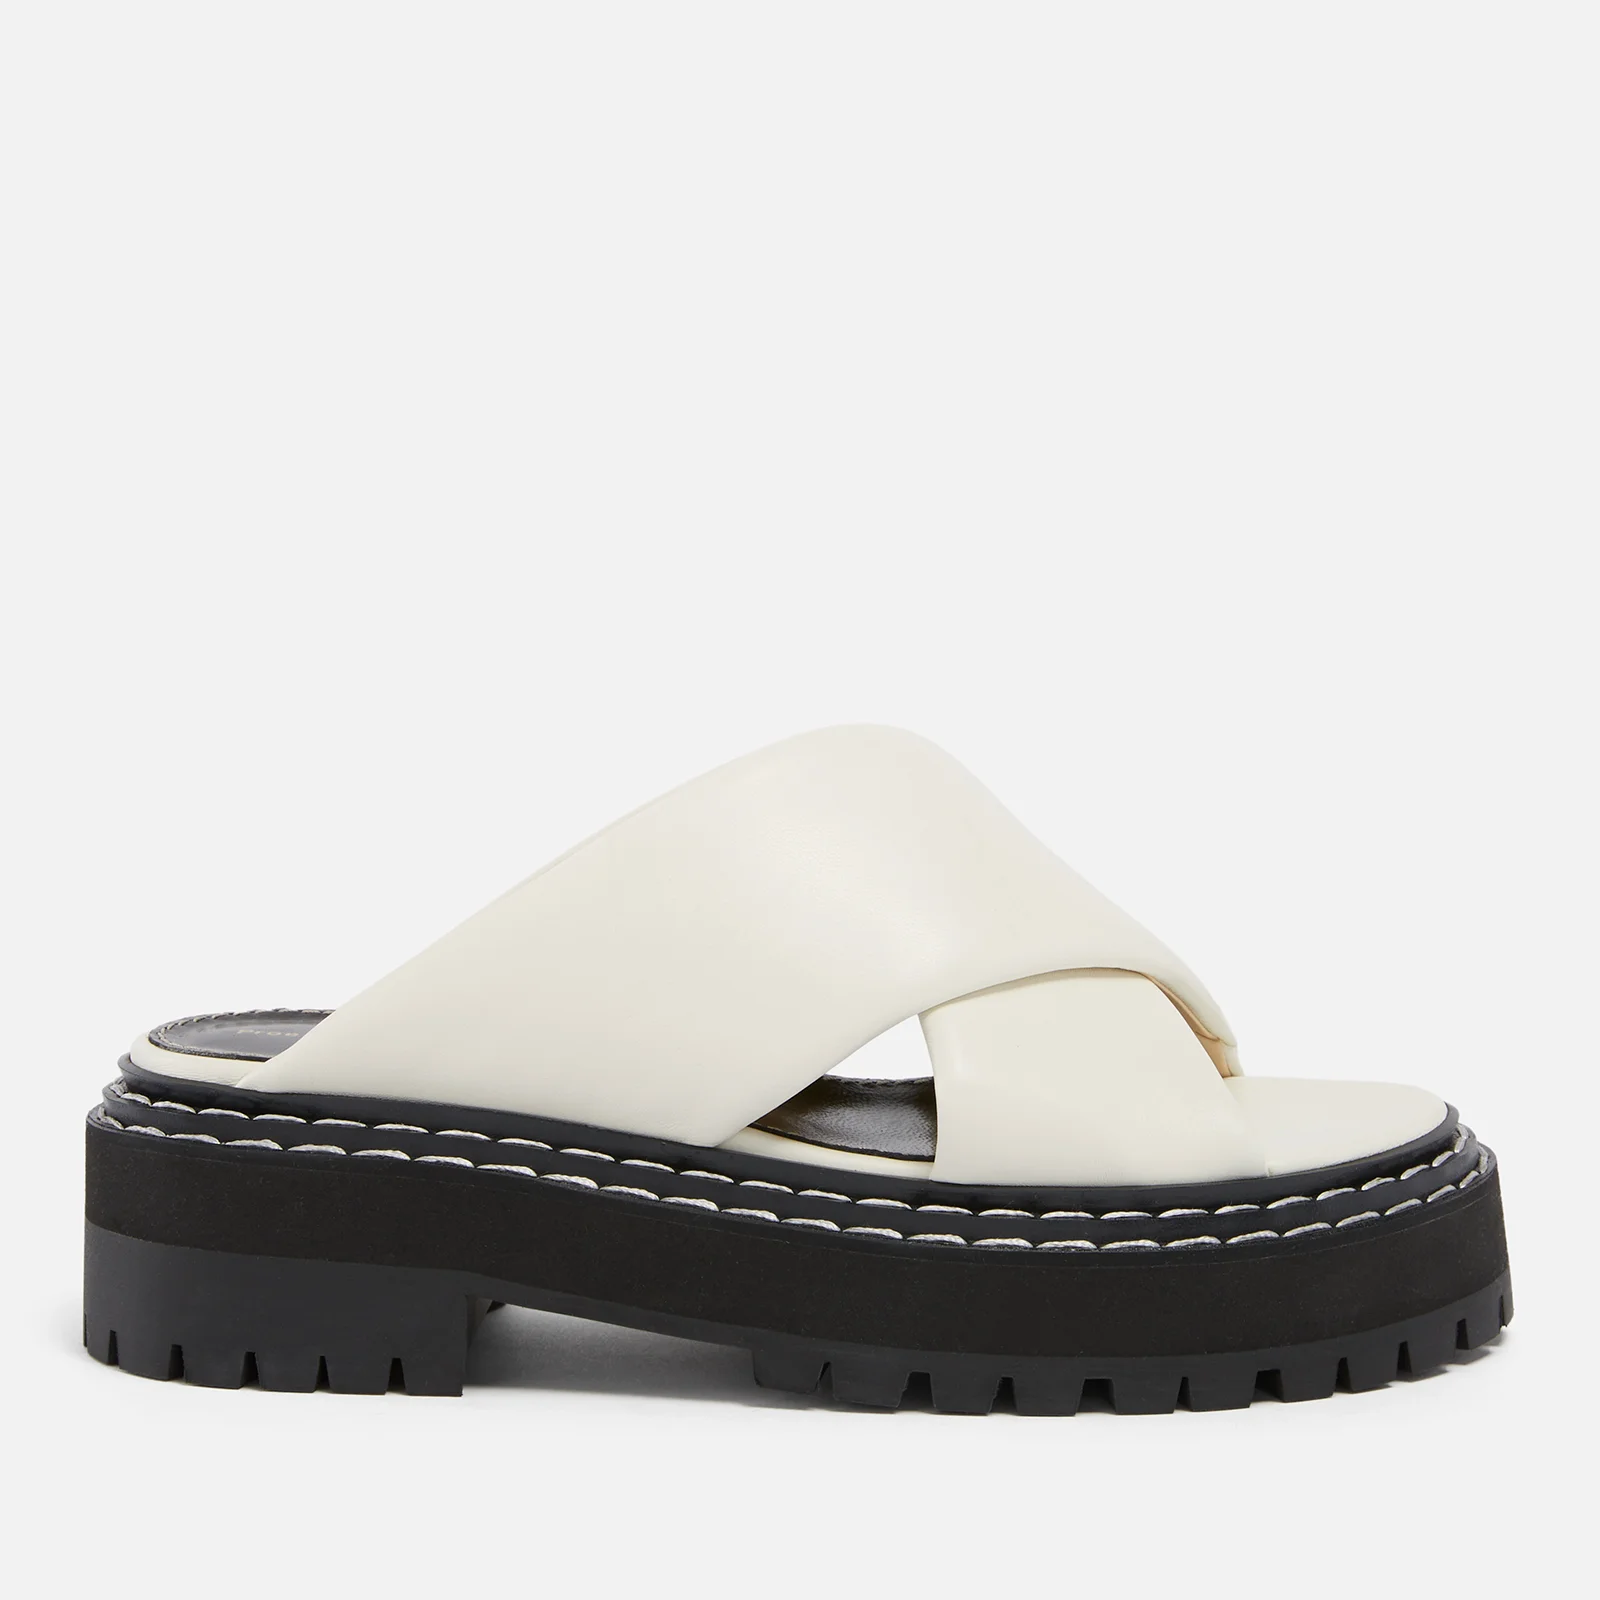 Proenza Schouler Women’s Leather Platform Sandals - UK 3 Image 1